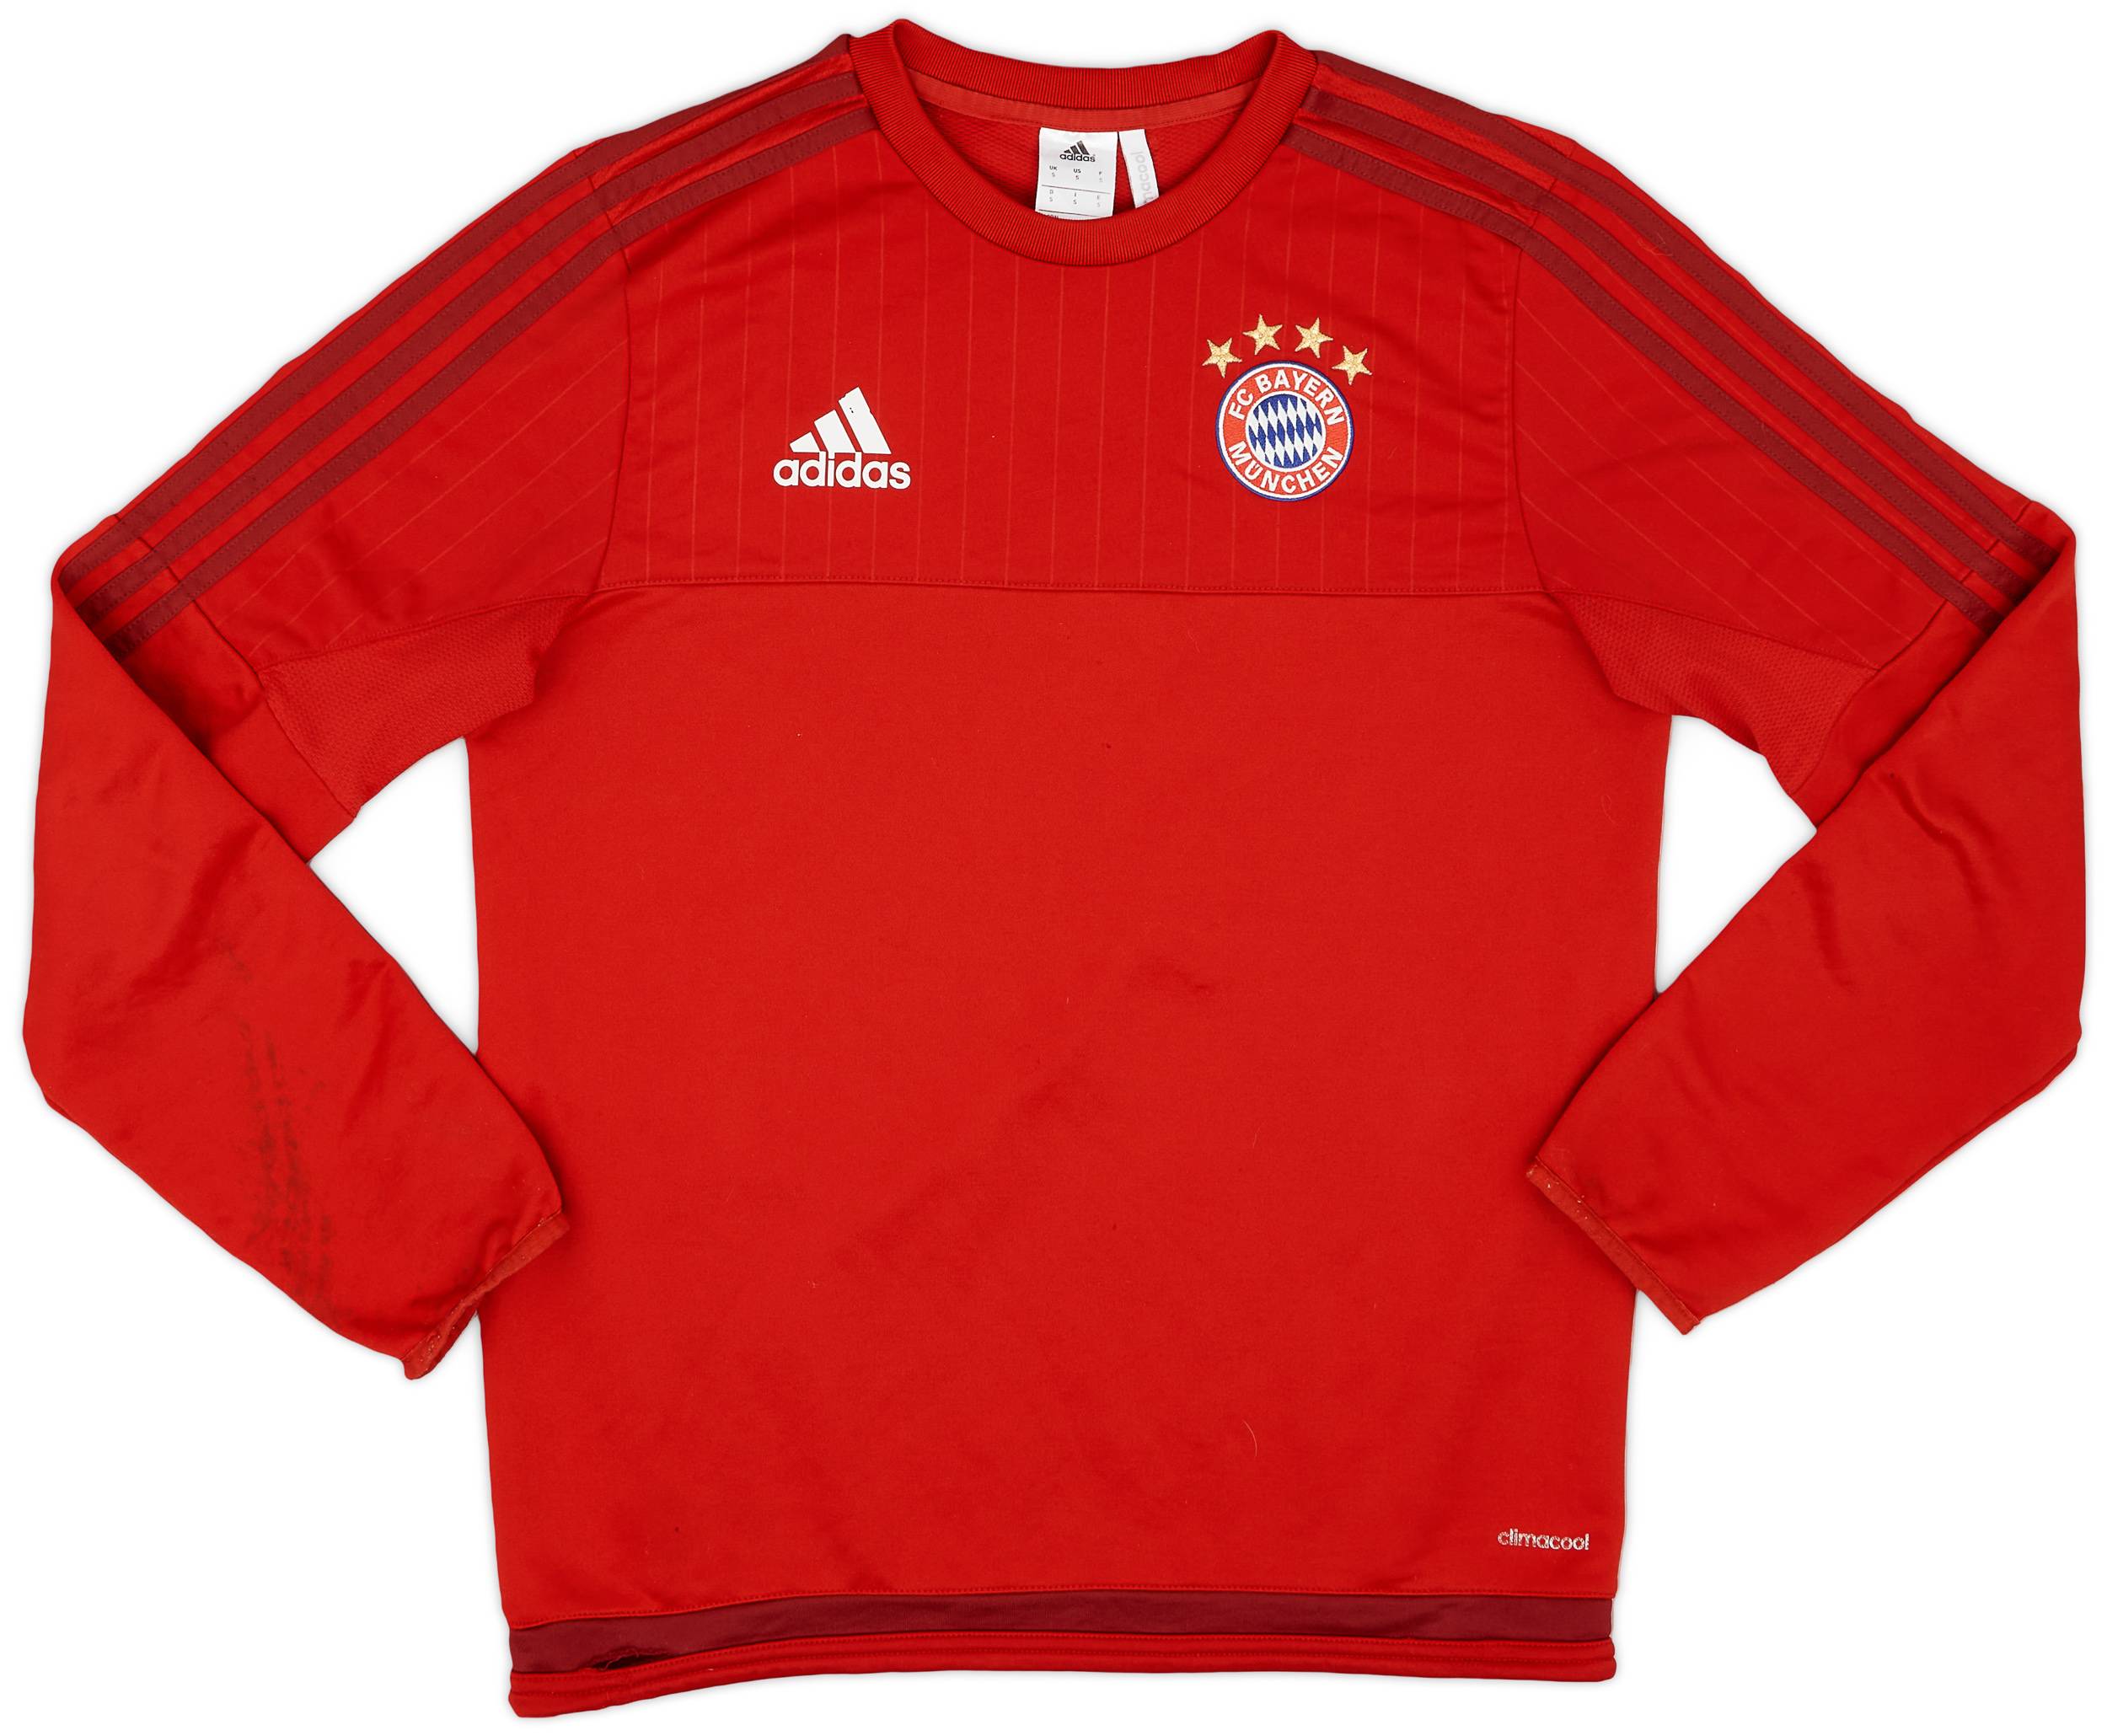 2015-16 Bayern Munich adidas Sweat Top - 8/10 - (S)